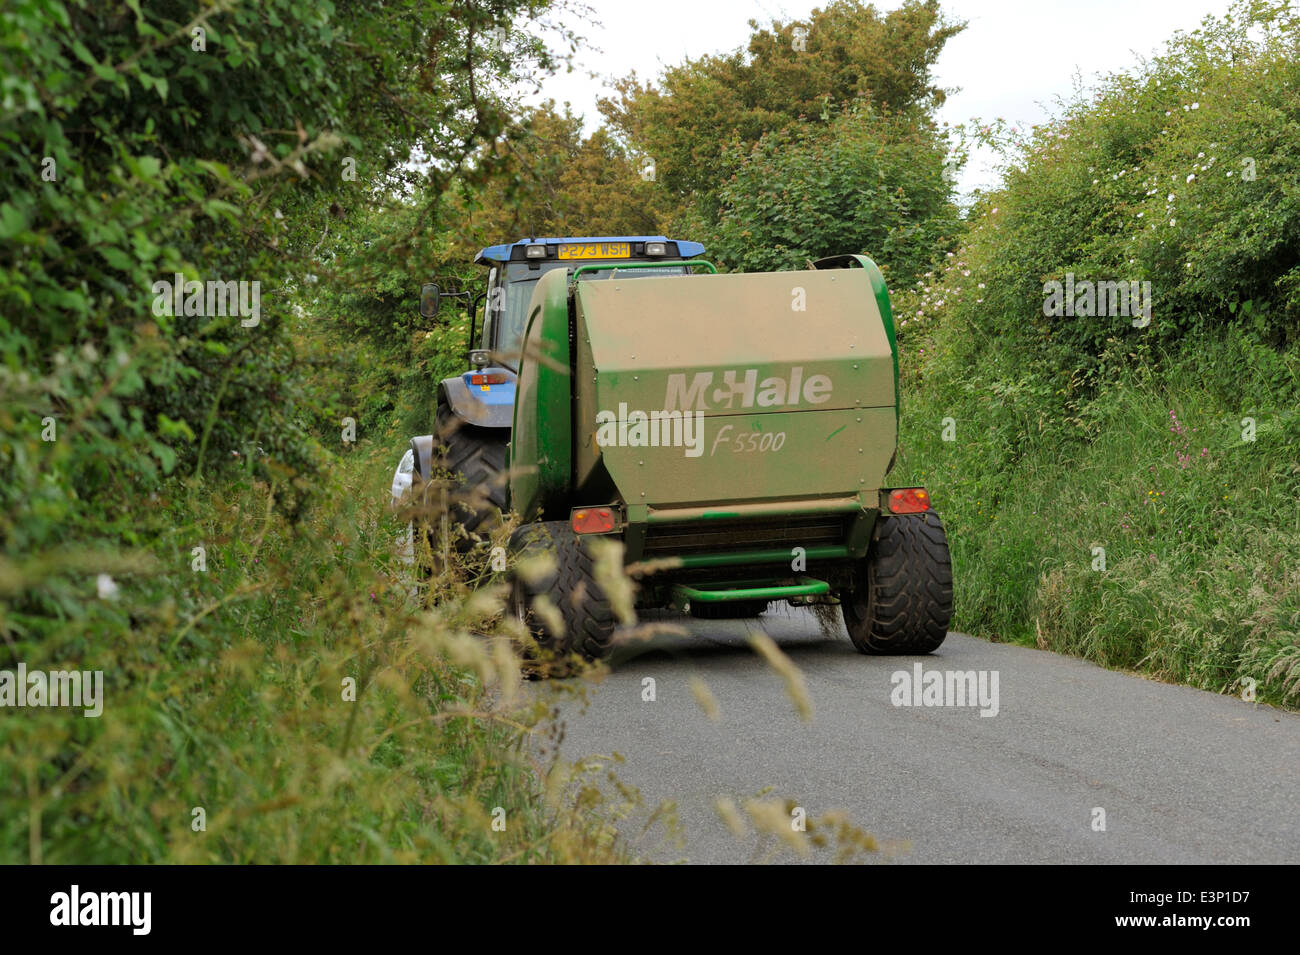 Macchinari agricoli che viene spostato verso il basso piccolo paese Lane, Regno Unito Foto Stock